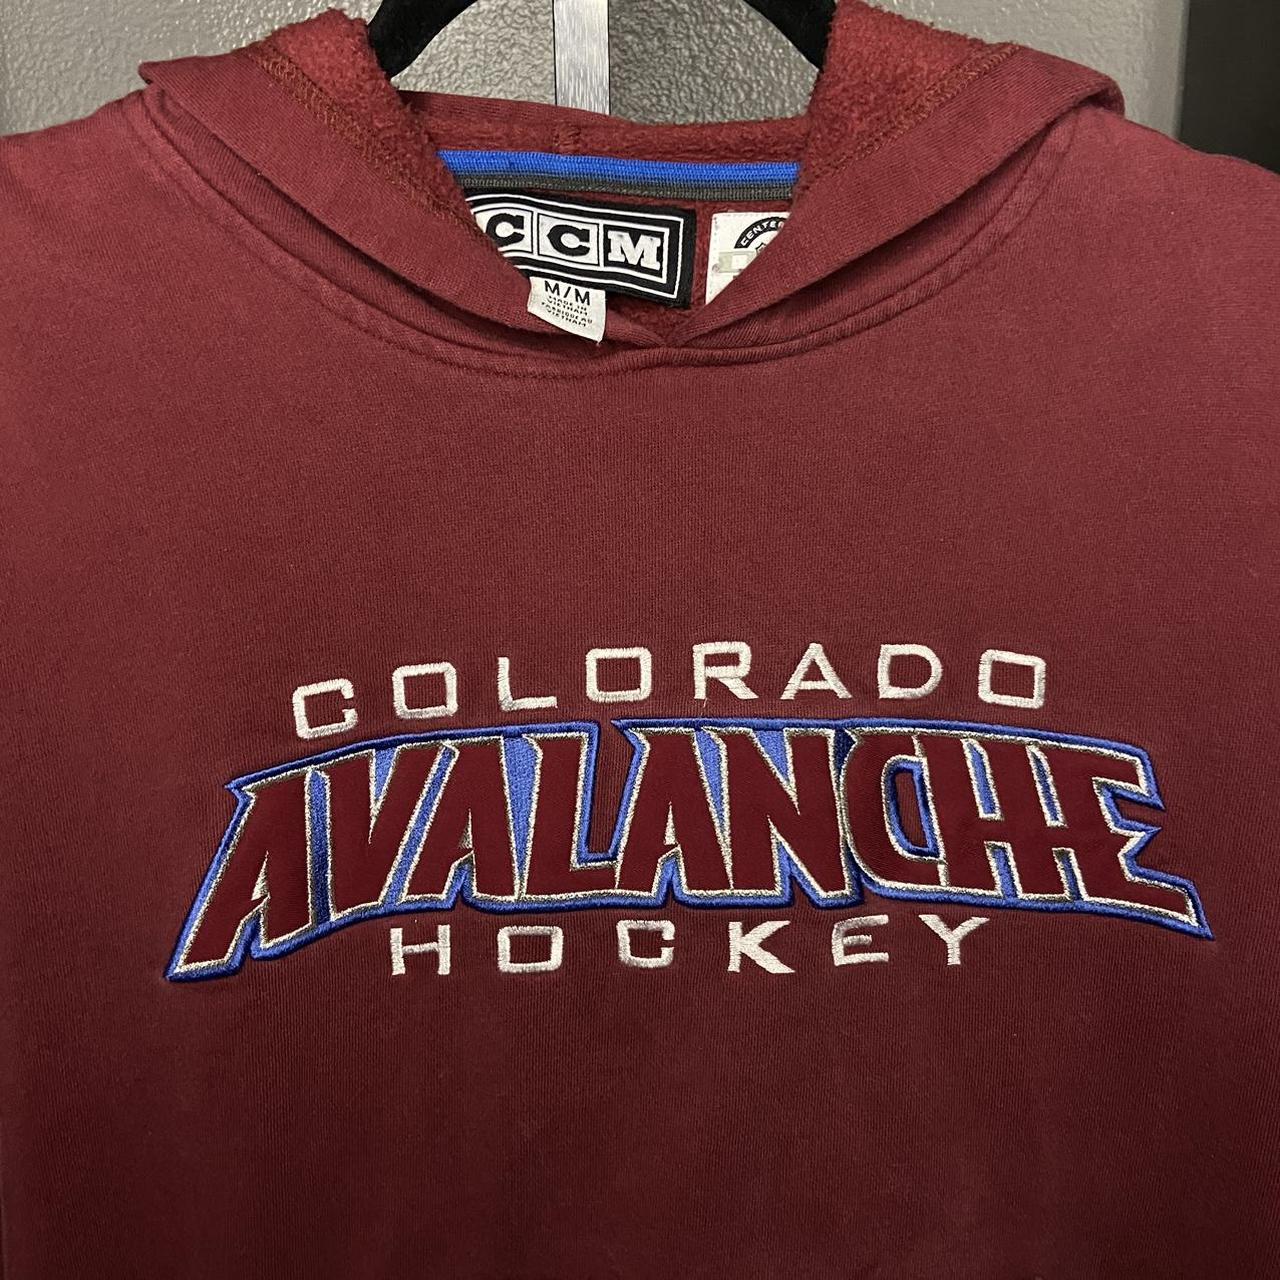 Vintage Colorado Avalanche Sweatshirt